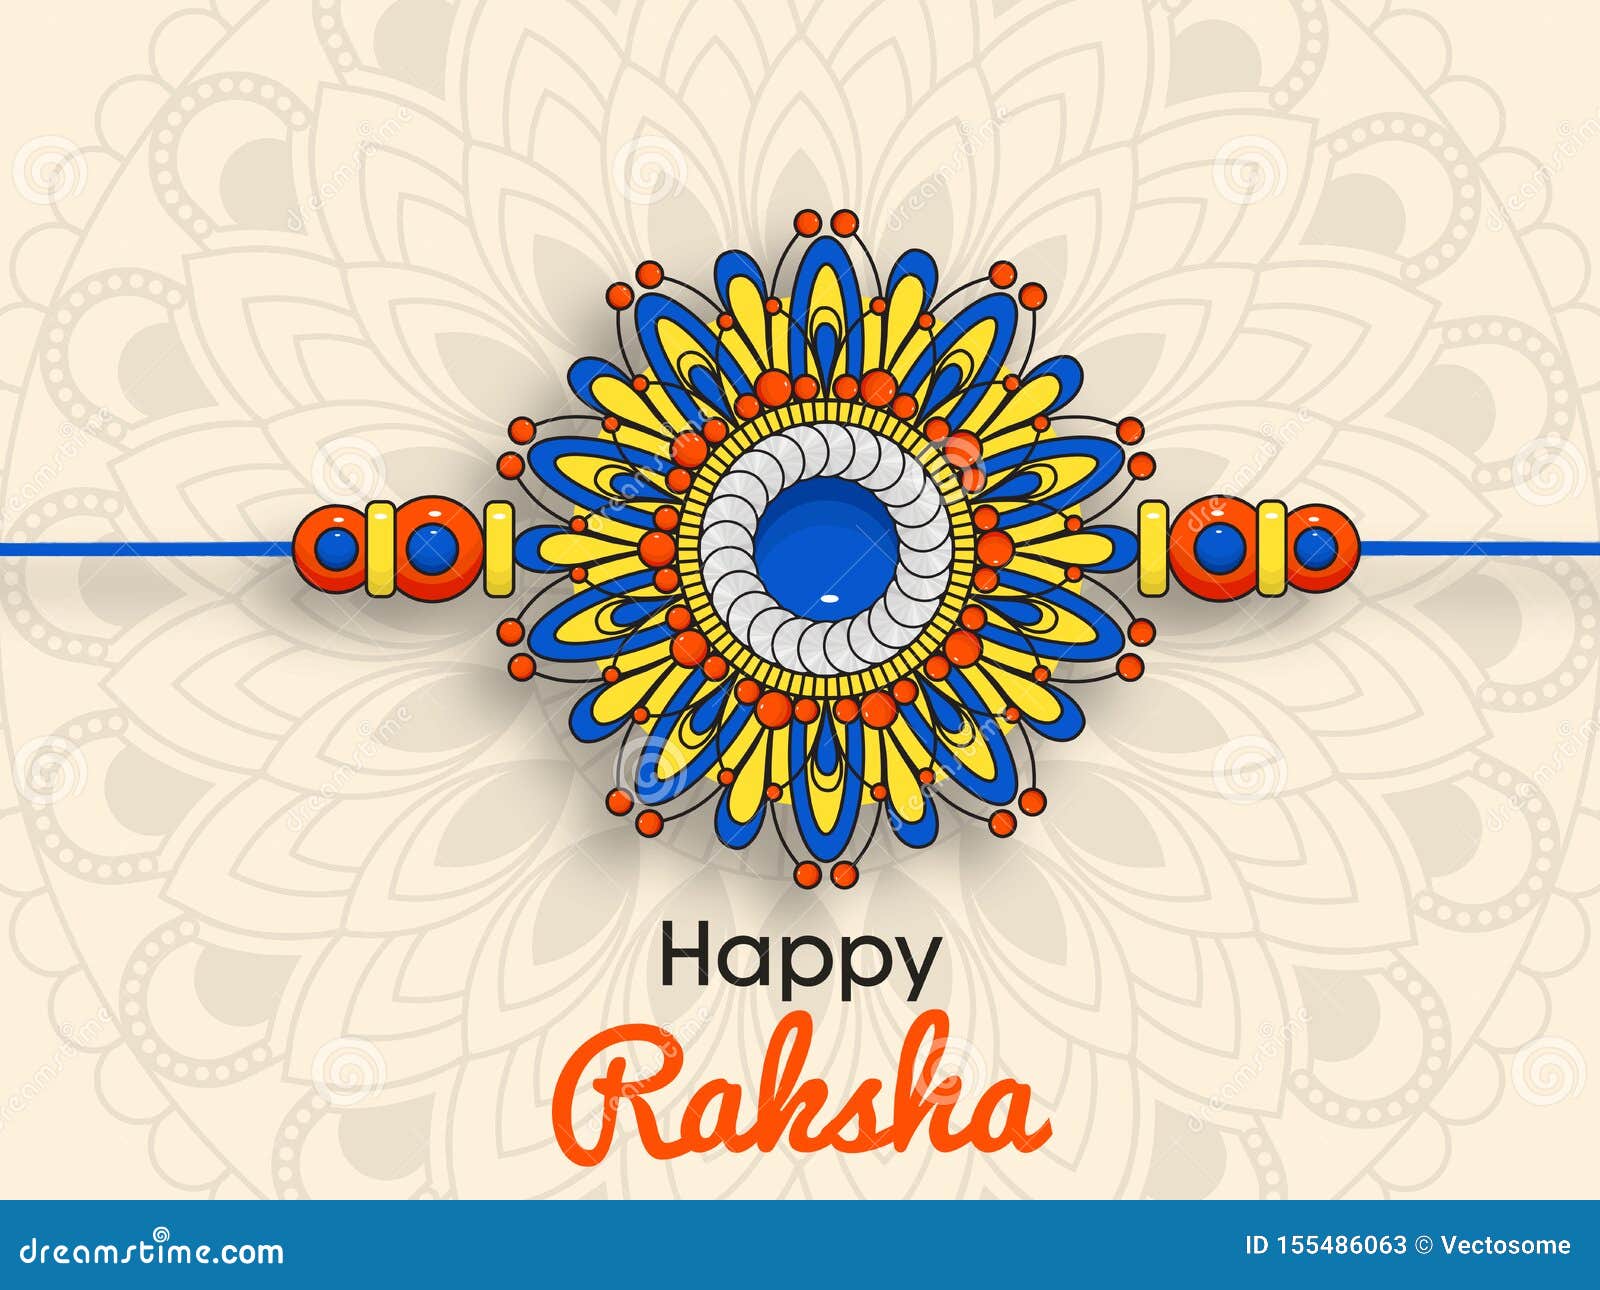 Beautiful Rakhi with Background for Happy Raksha Bandhan Celebrations.  Stock Vector - Illustration of beautiful, gems: 155486063